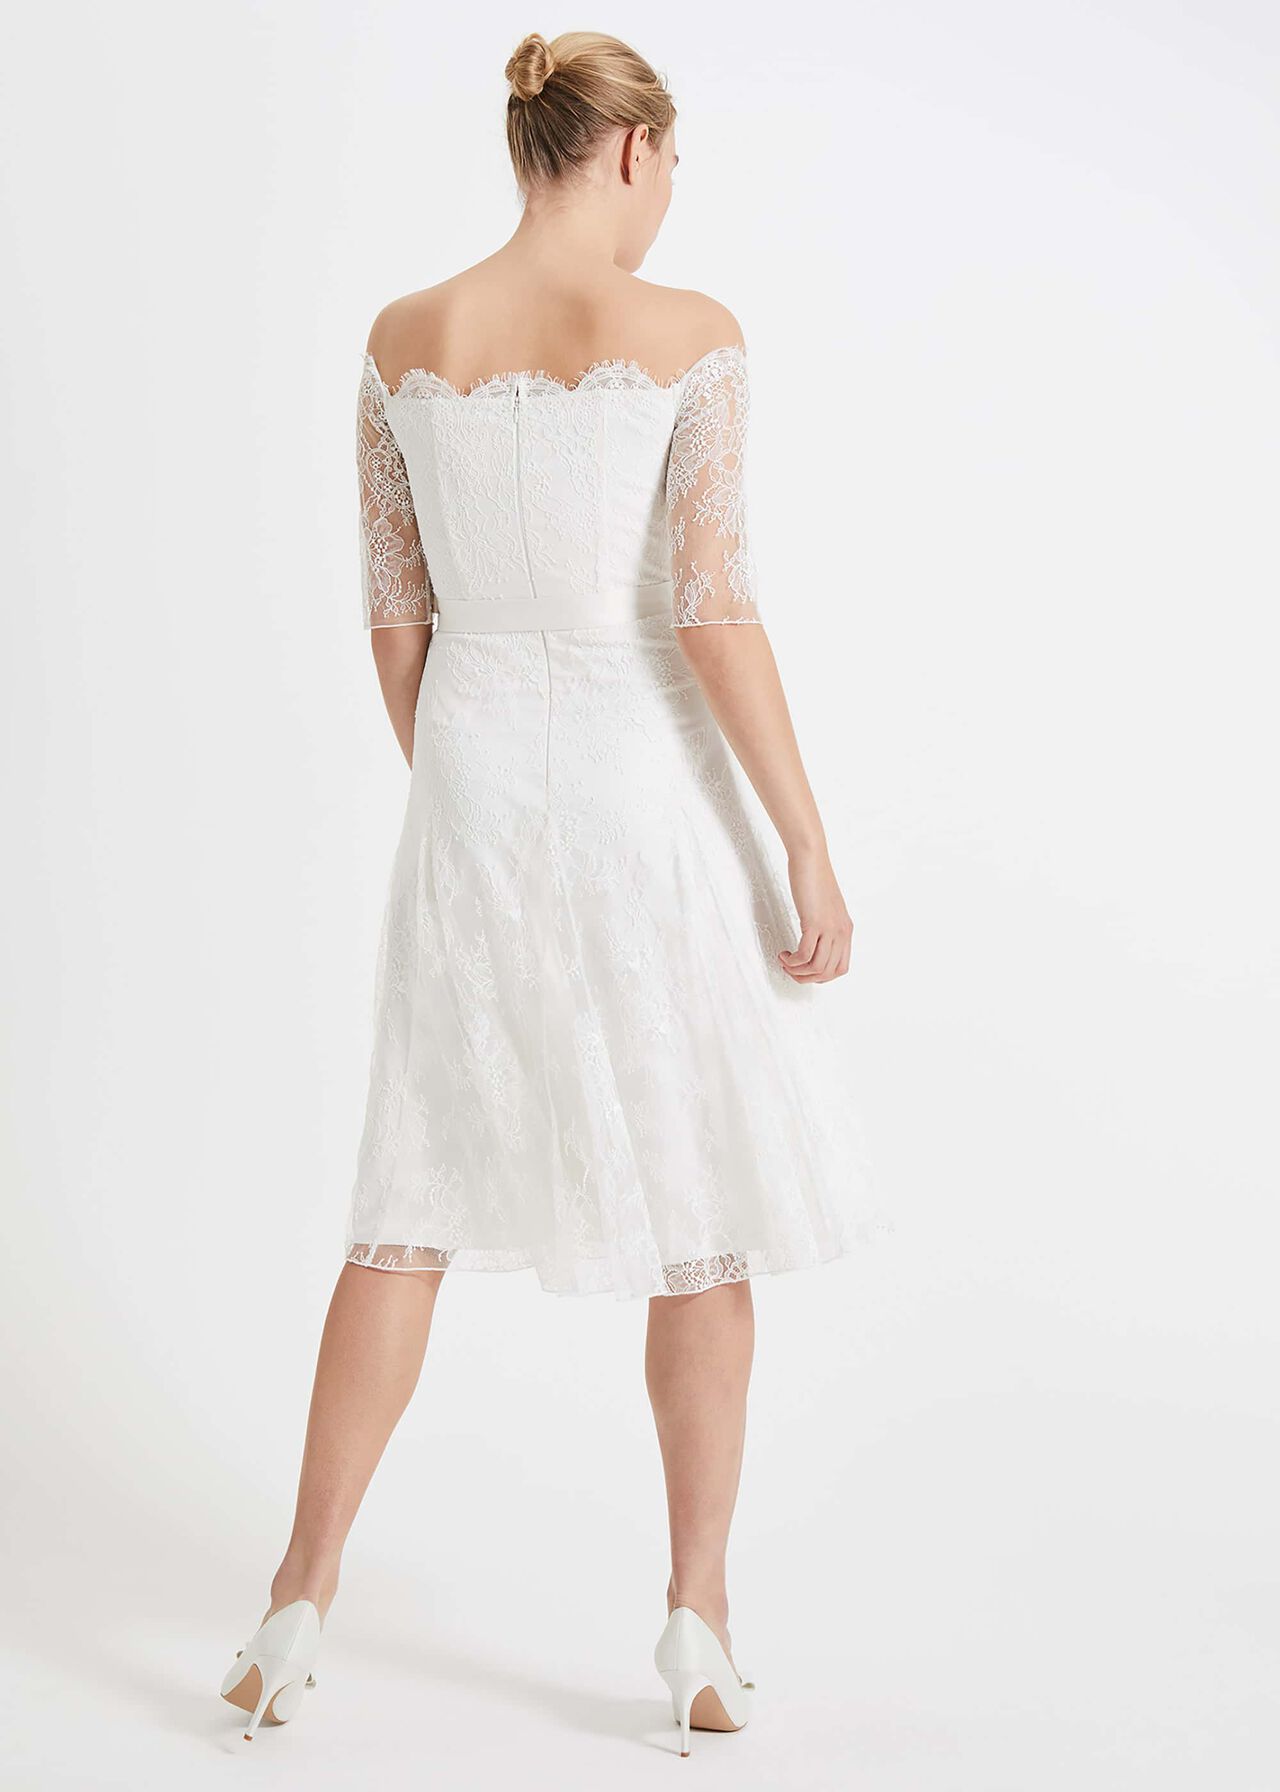 Evette Lace Wedding Dress